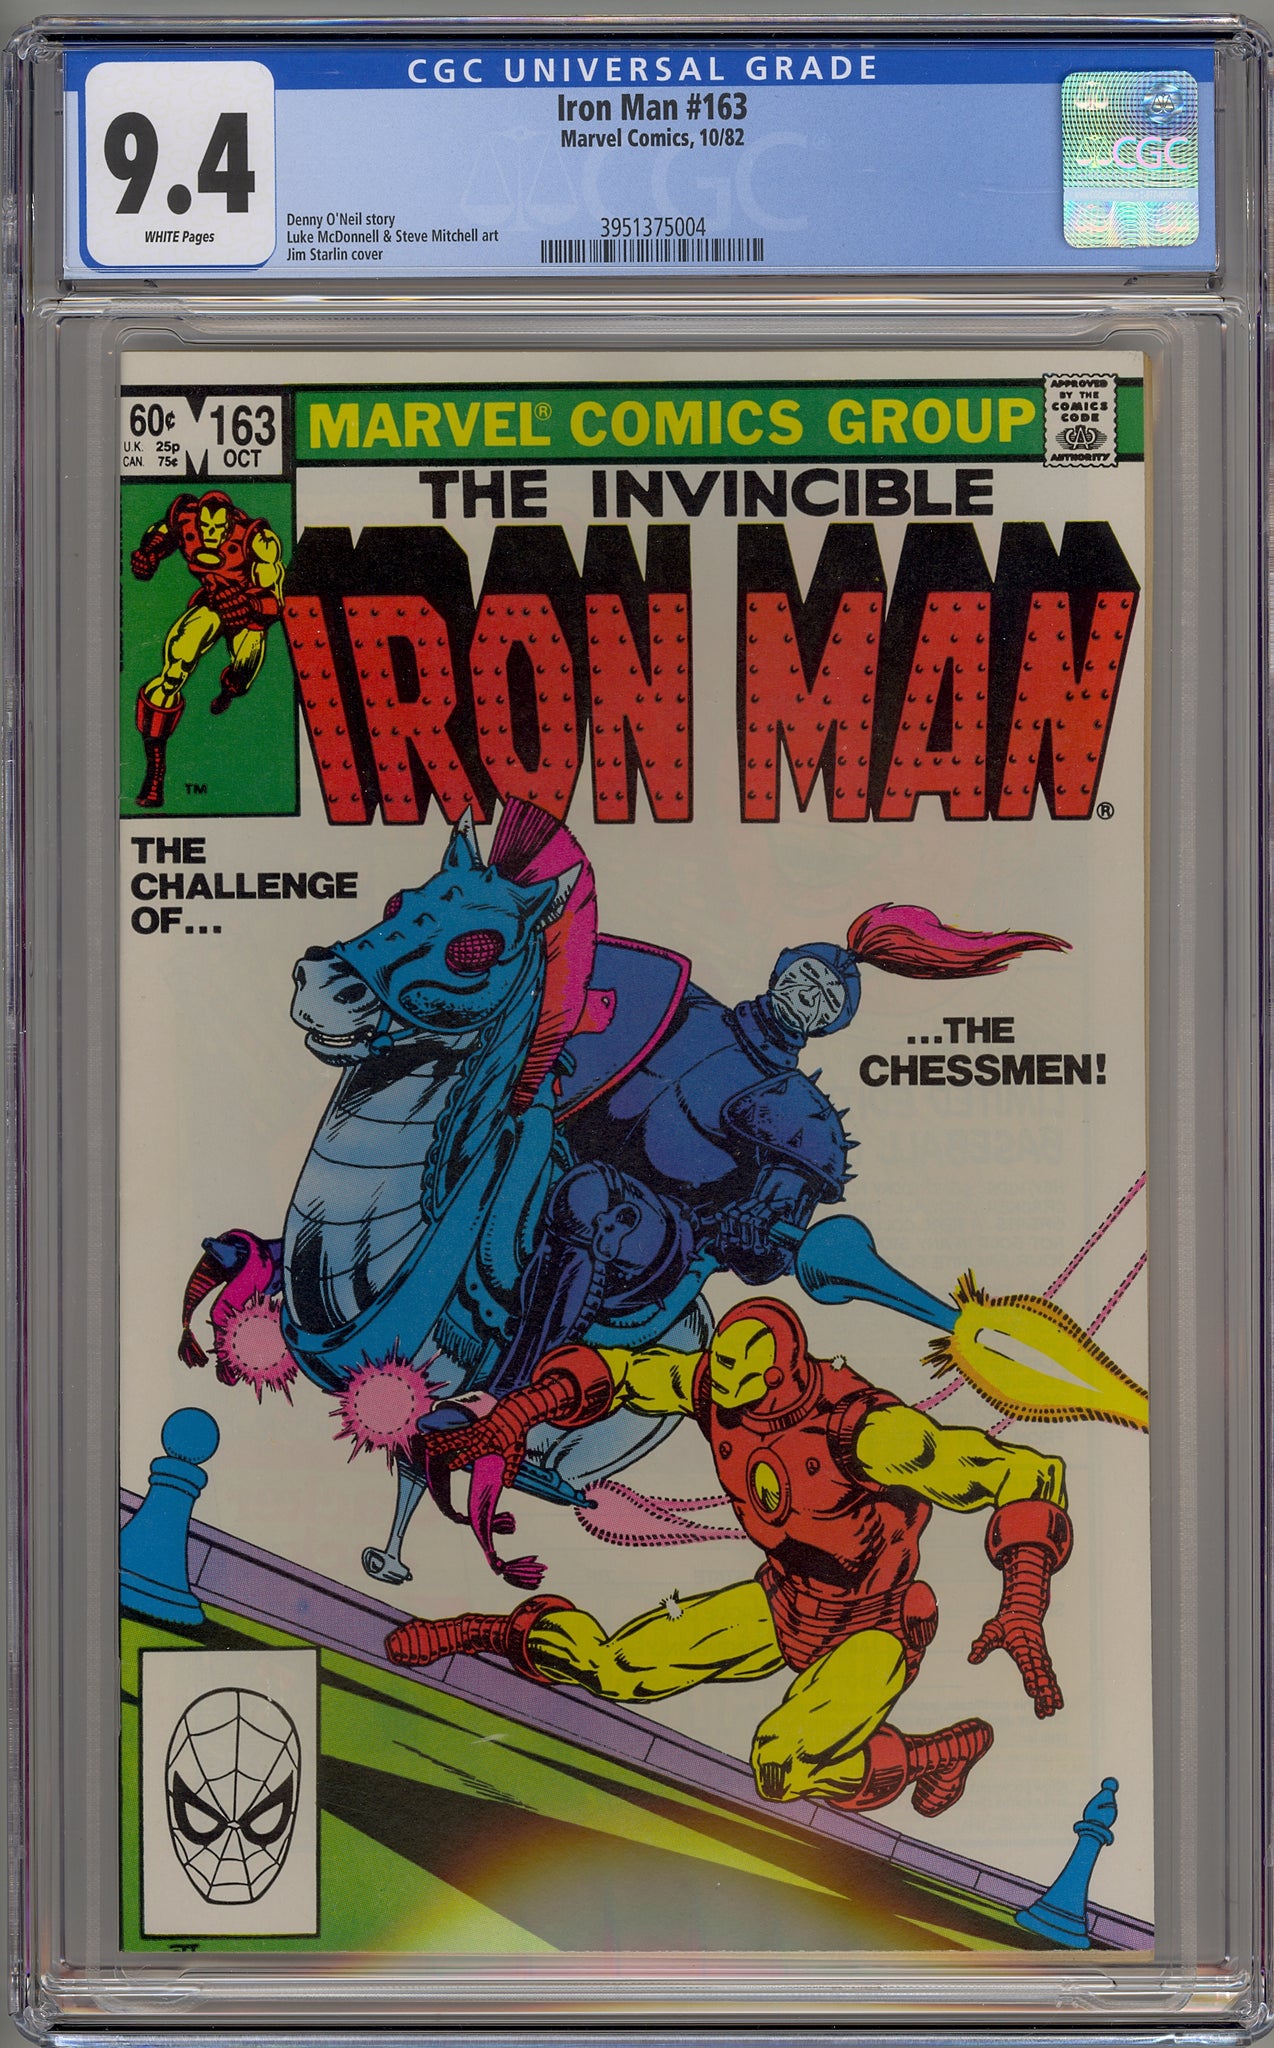 Iron Man #163 (1982) Chessmen